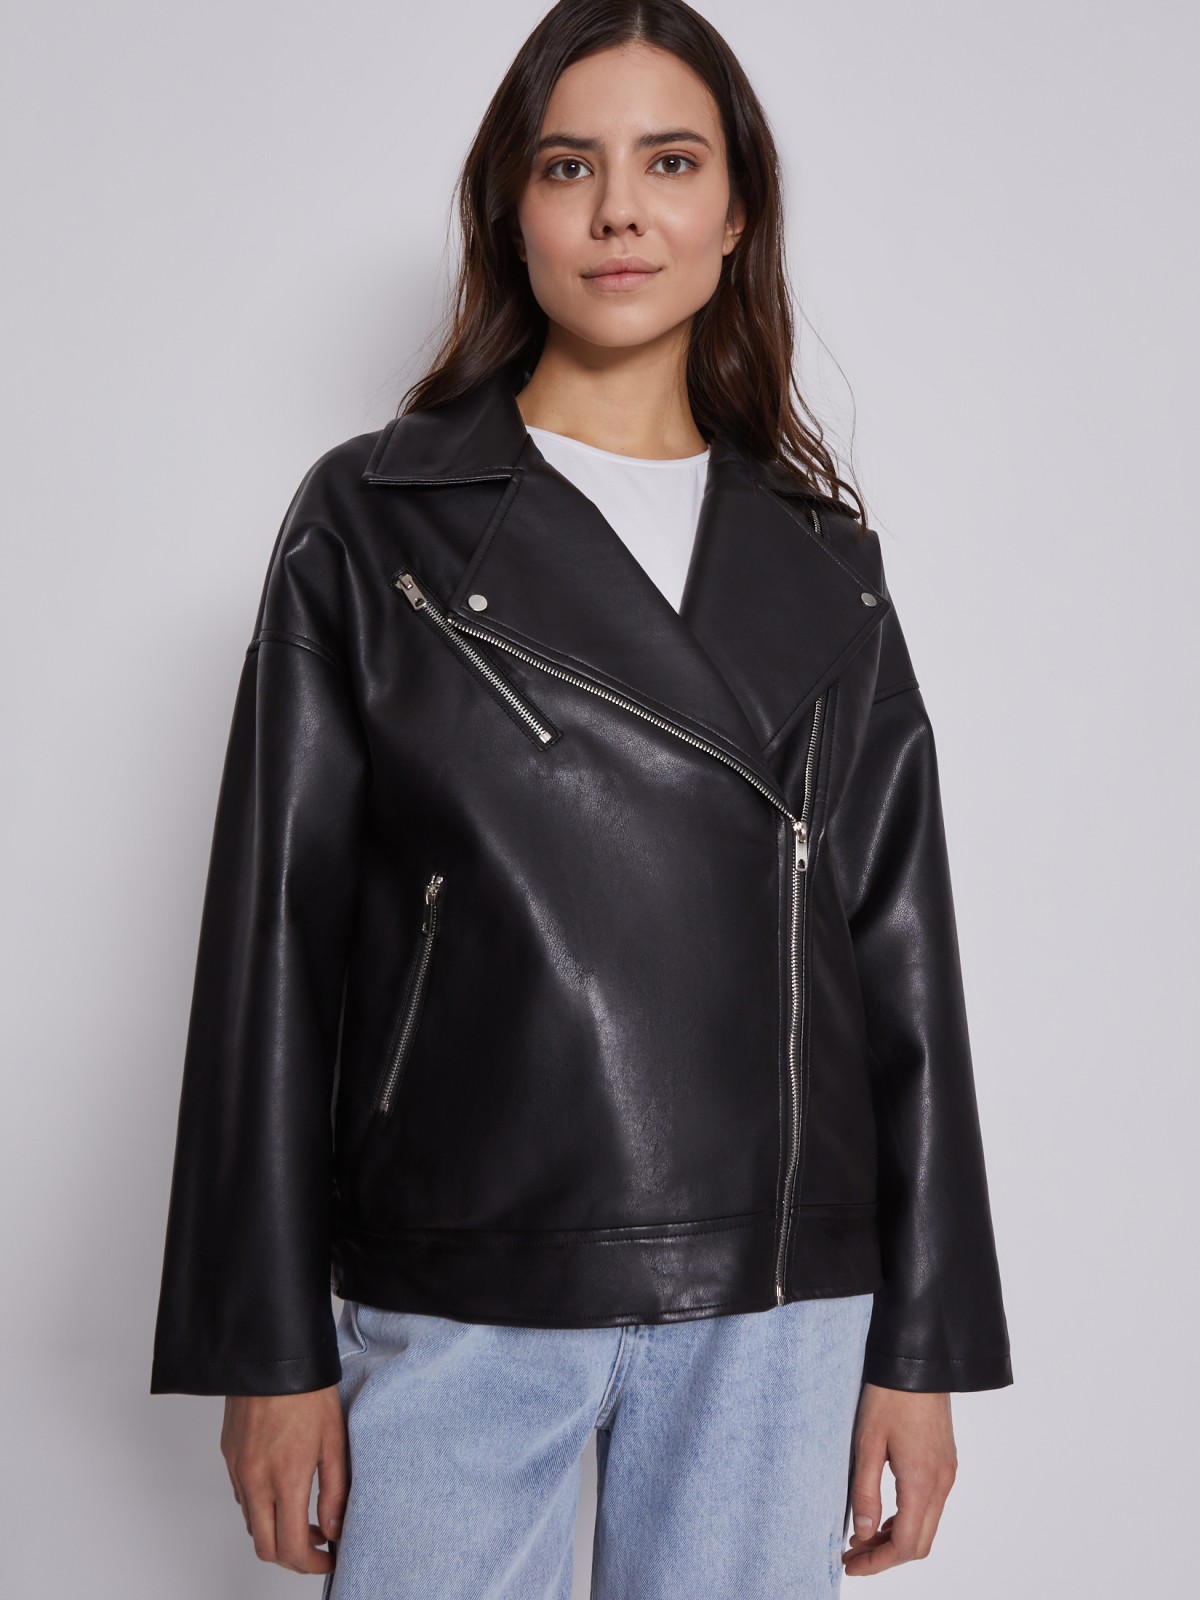 Кожаная куртка-косуха zolla 022325602024, цвет черный, размер XS - фото 4